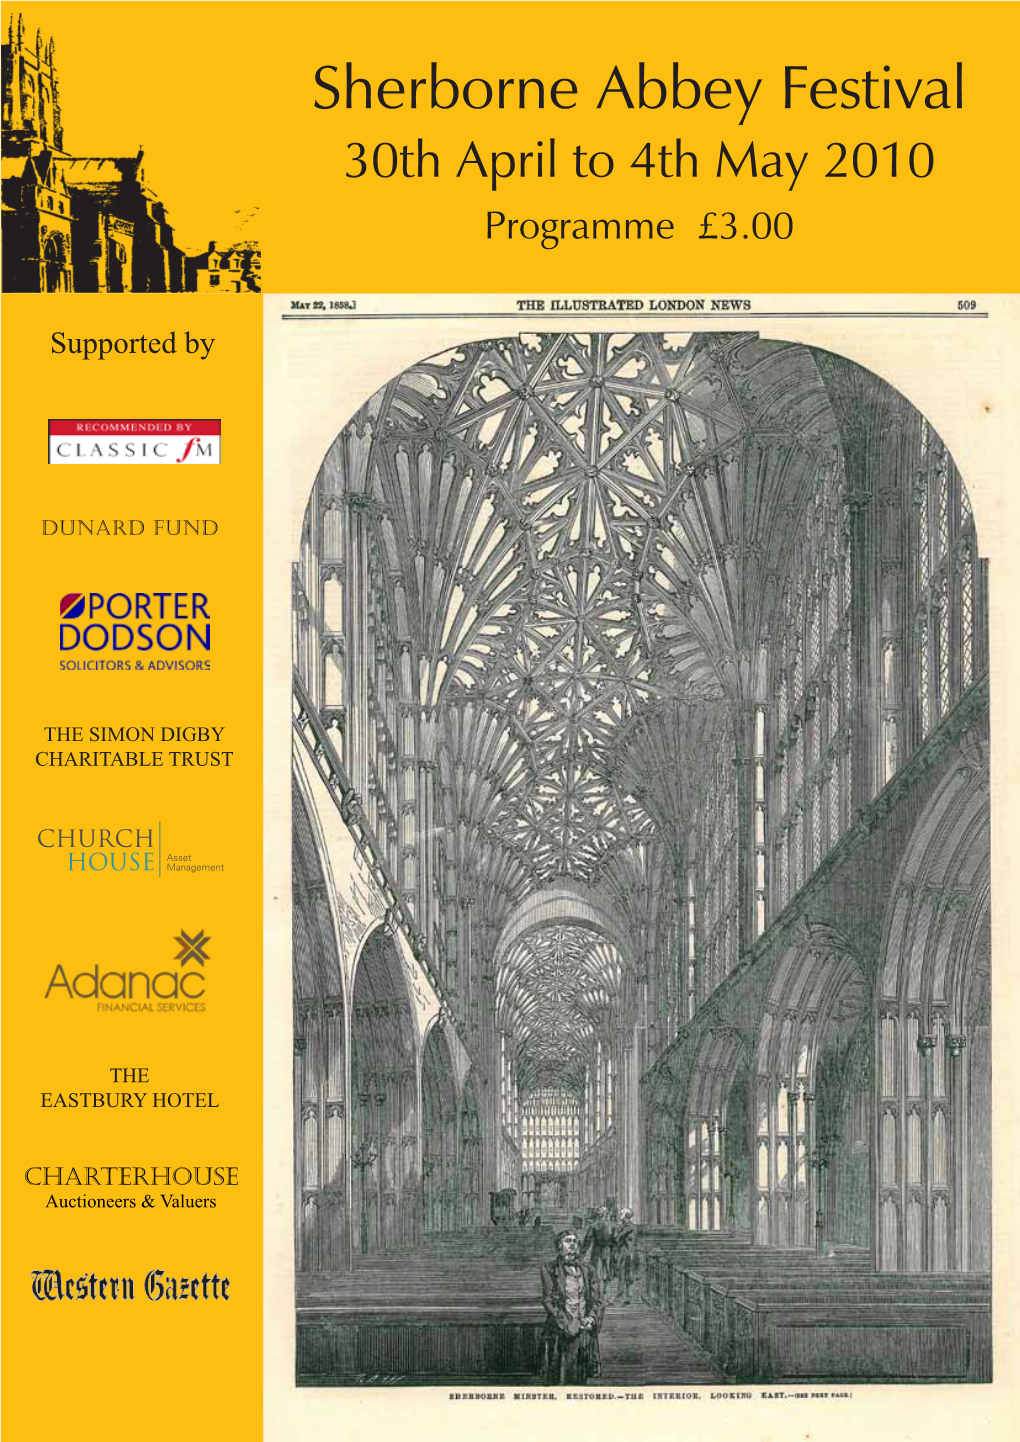 2010 Programme £3.00